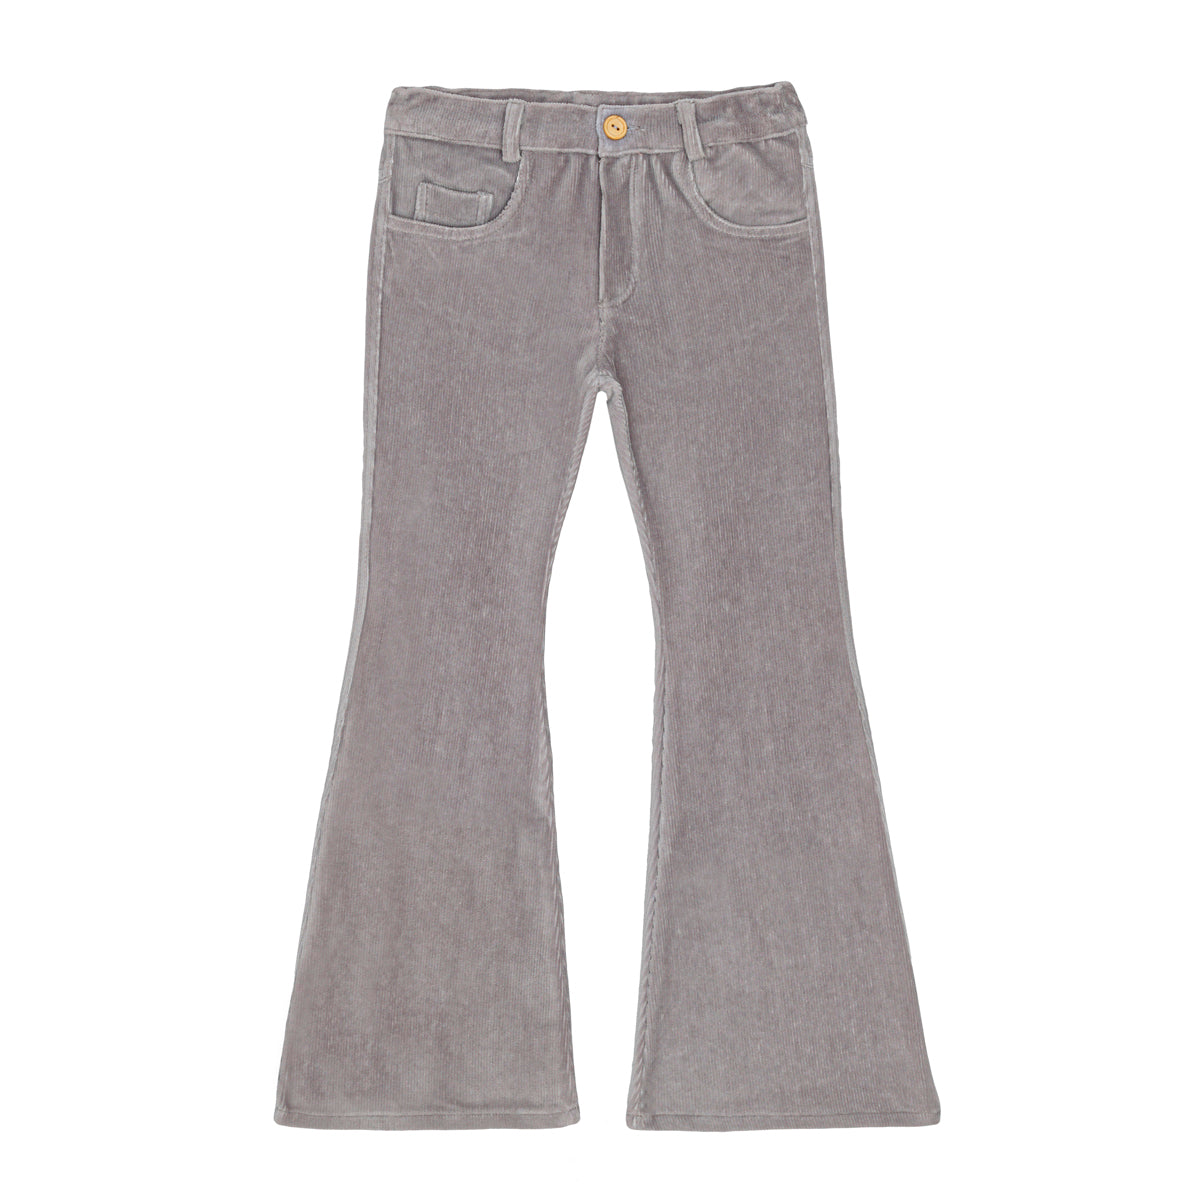 LITTLE HEDONIST - Pantalon neuf en velours côtelé gris - 2 ans